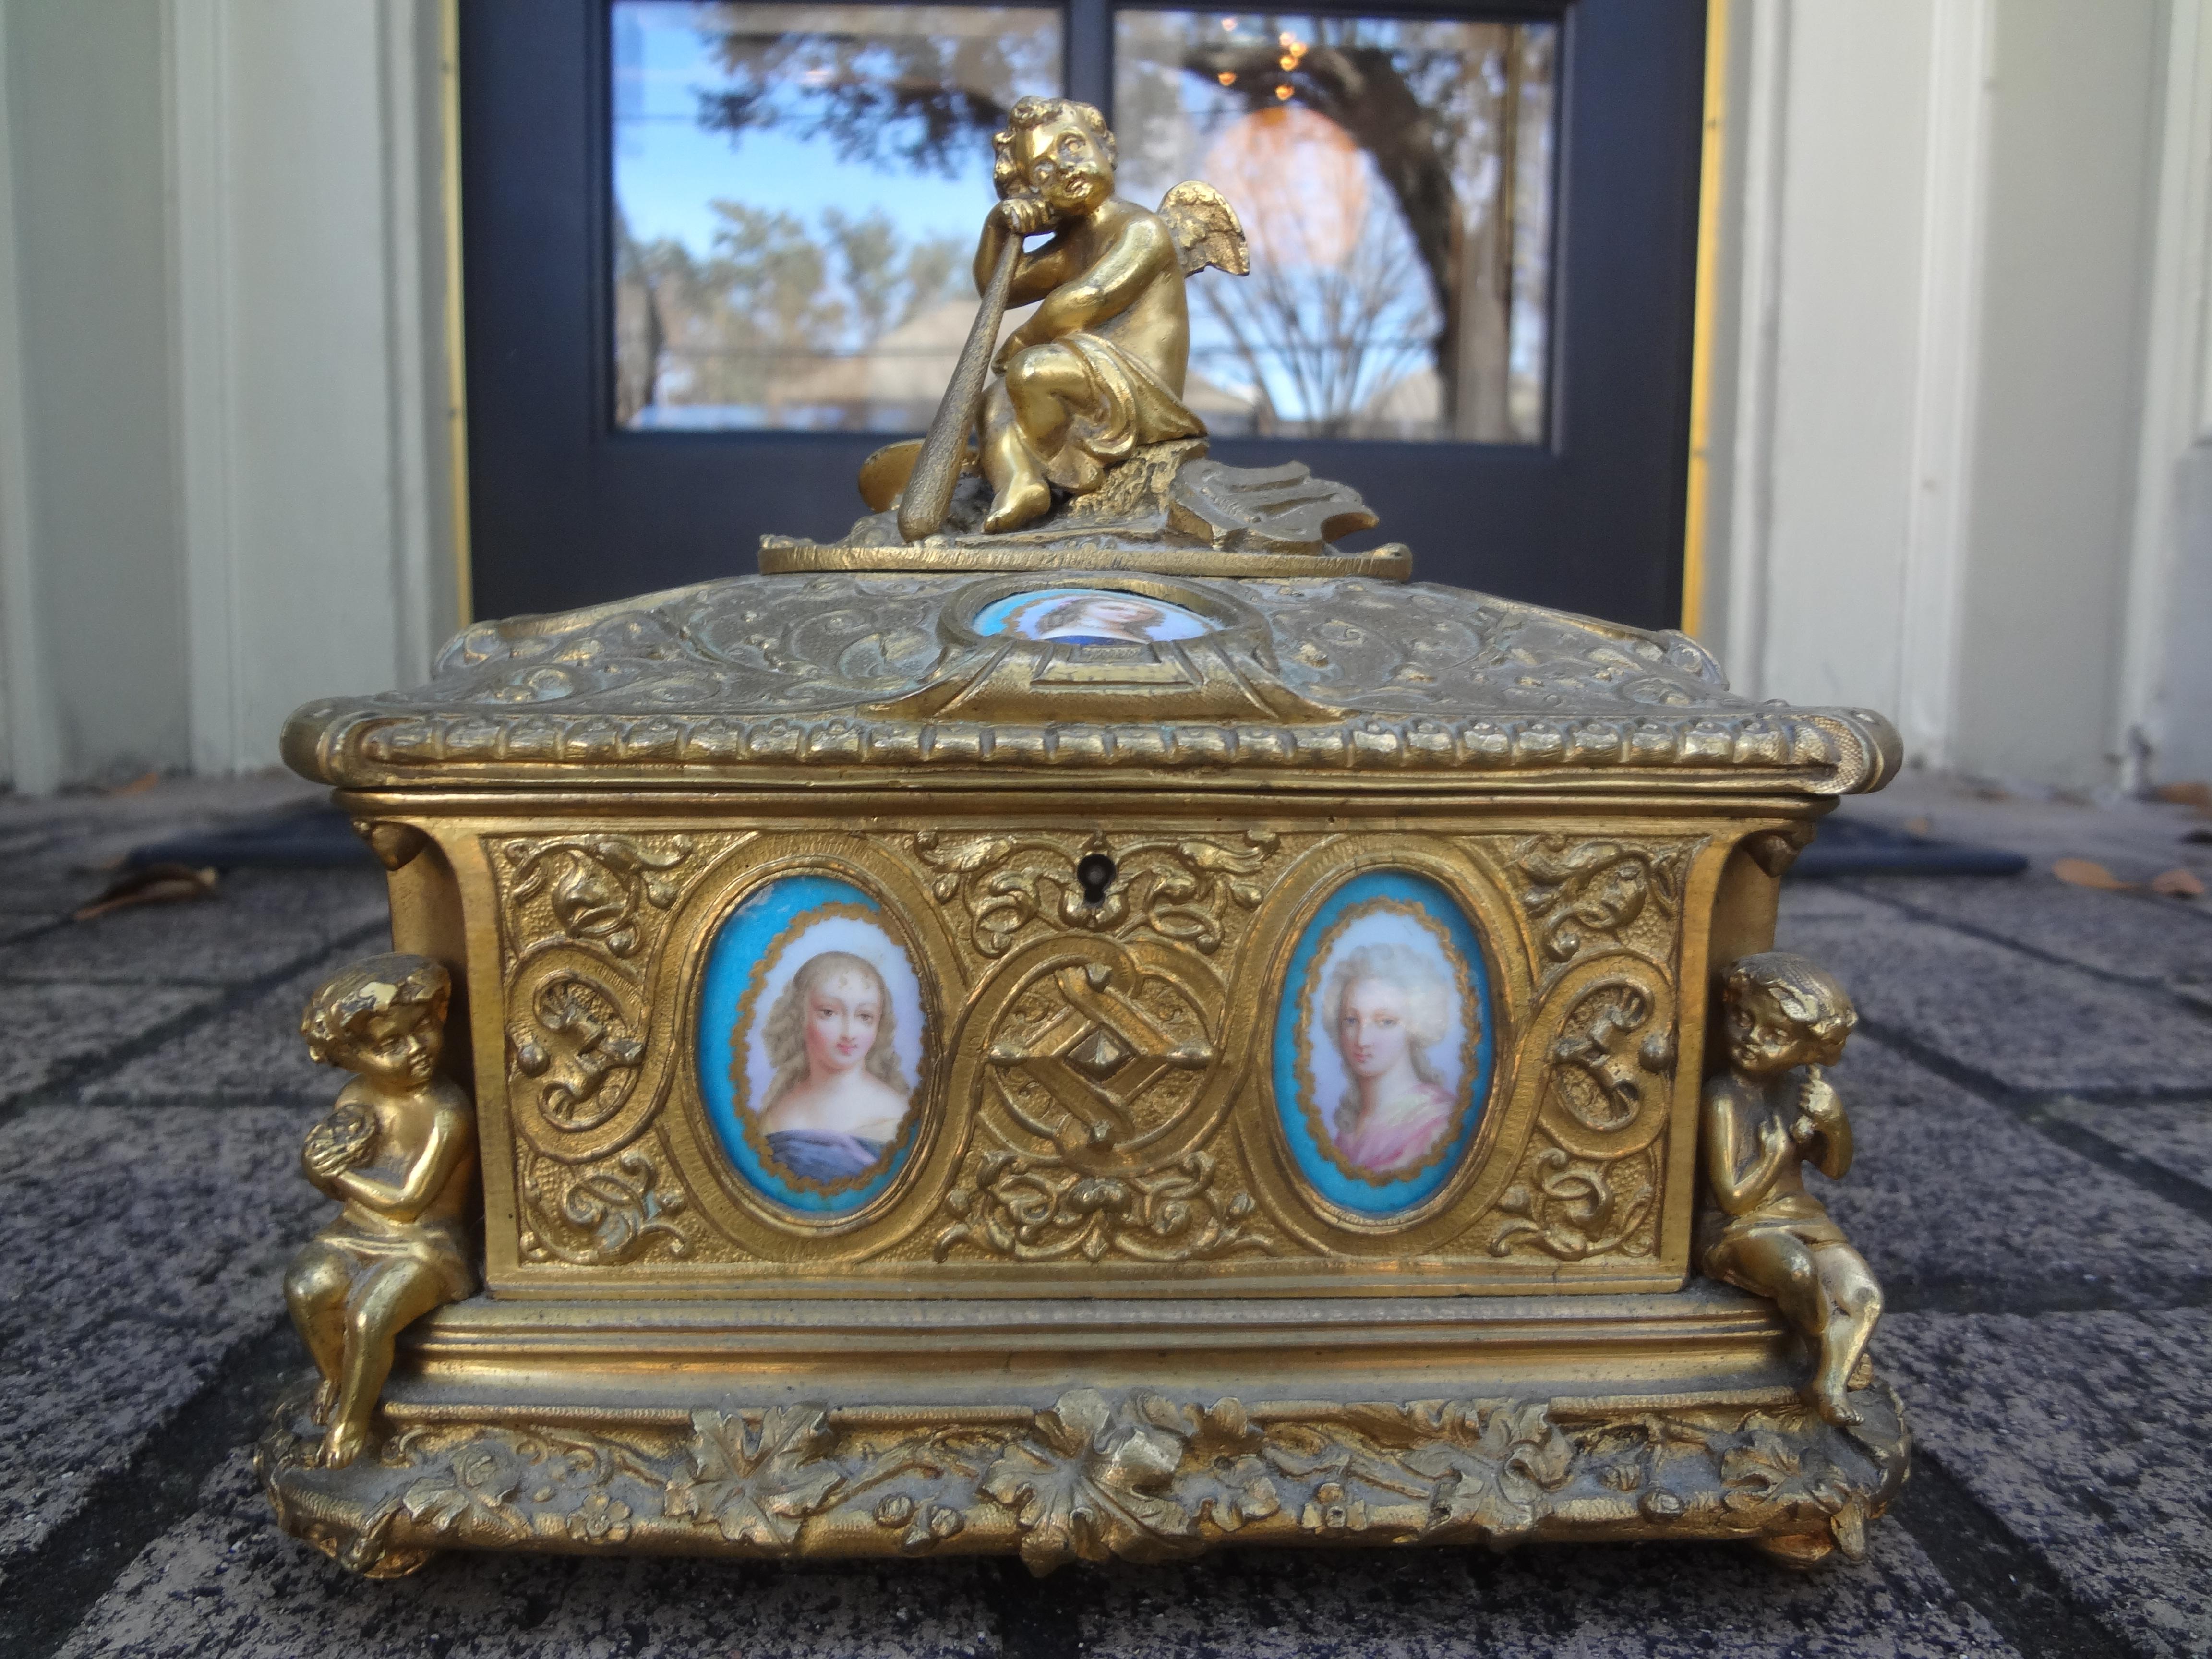 Boîte en bronze de style Louis XV du 19e siècle.
Cette étonnante boîte ancienne en bronze français avec un couvercle à charnière, décorée de cupidons entourés de plaques florales et figuratives en porcelaine de style Sèvres et d'un intérieur doublé